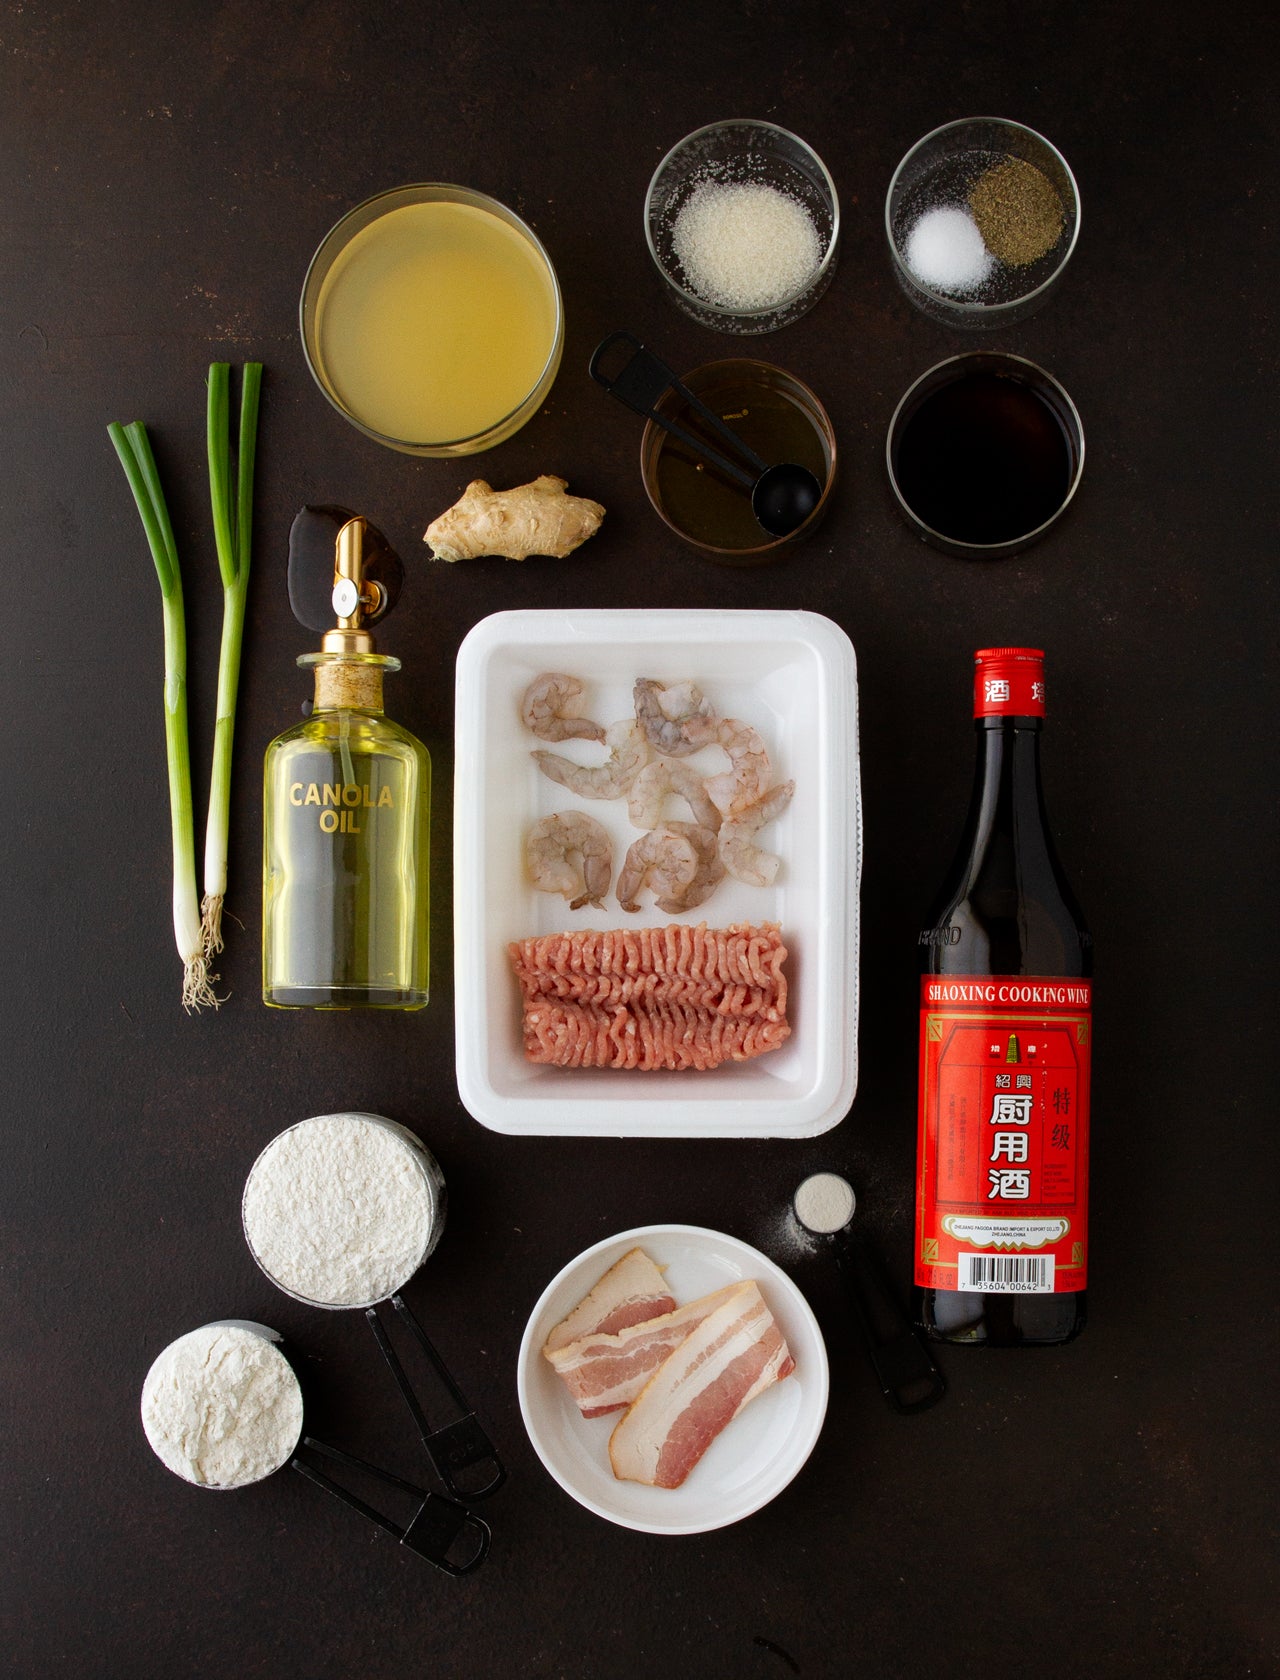 Xiao long bao ingredients